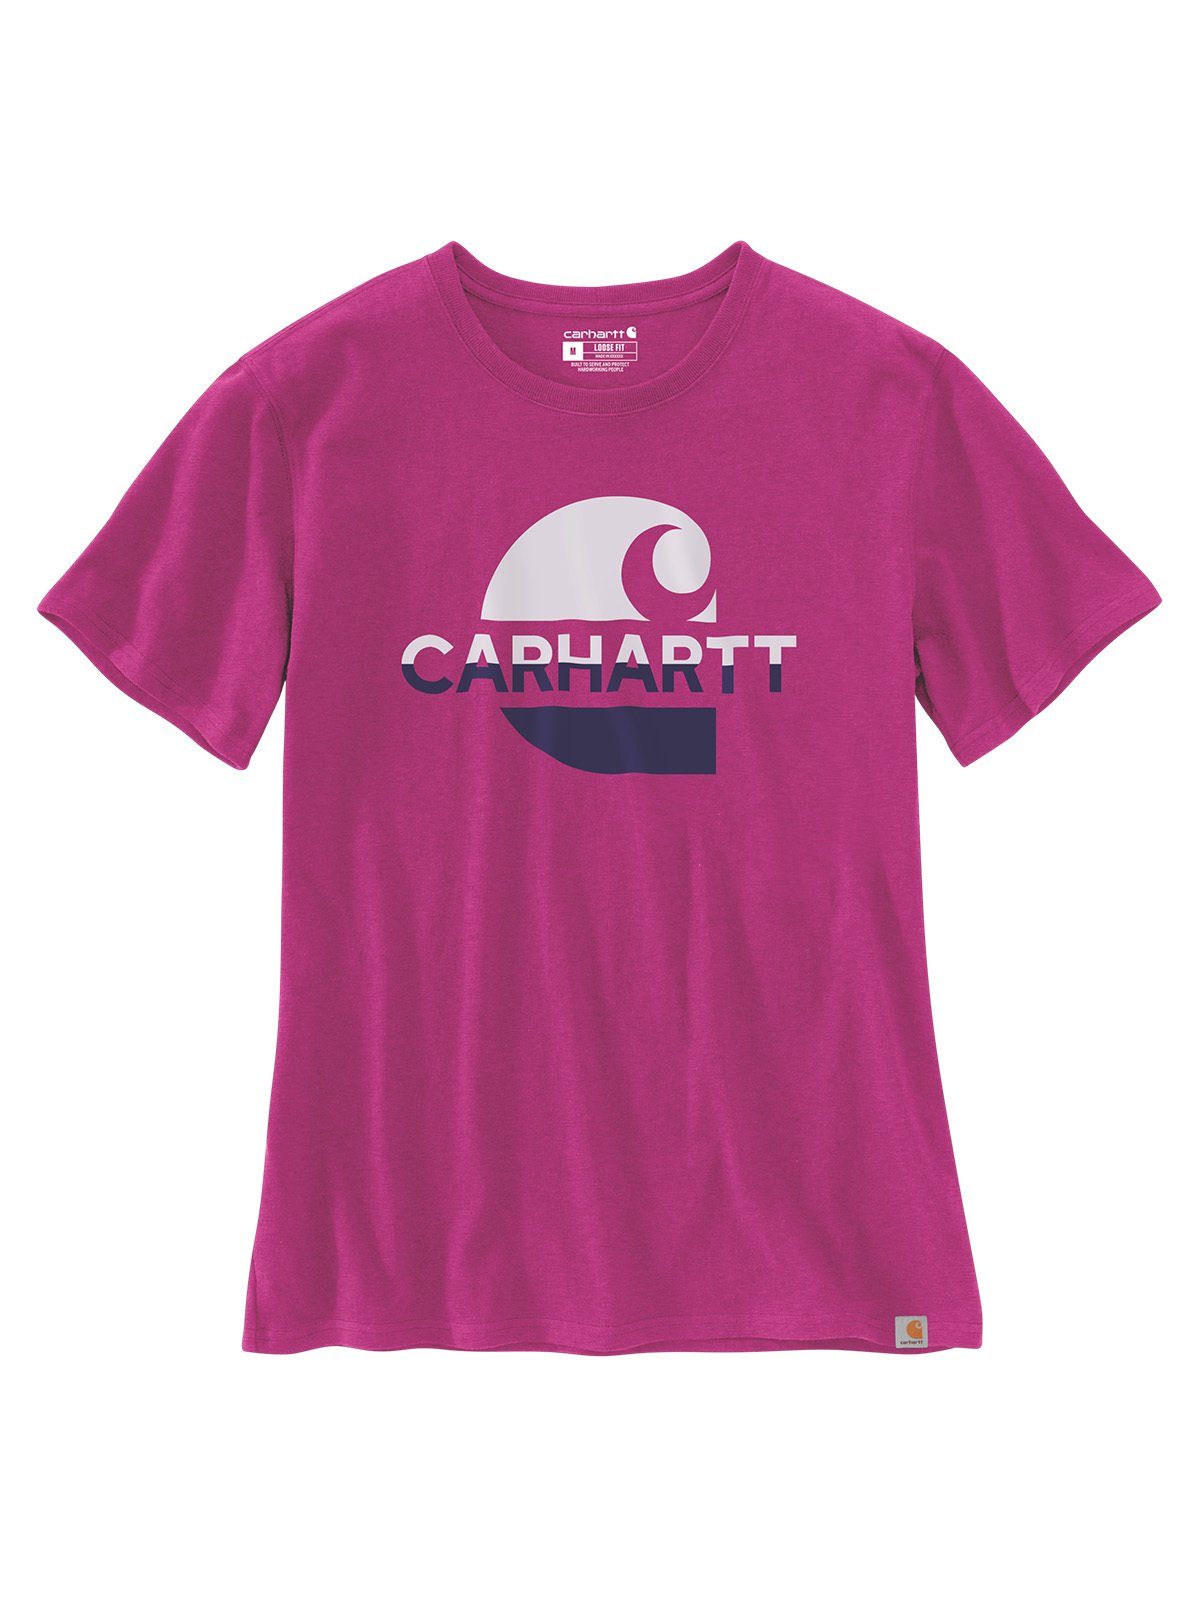 Carhartt T-Shirt Carhartt Graphic Damen T-Shirt pink magenta agate